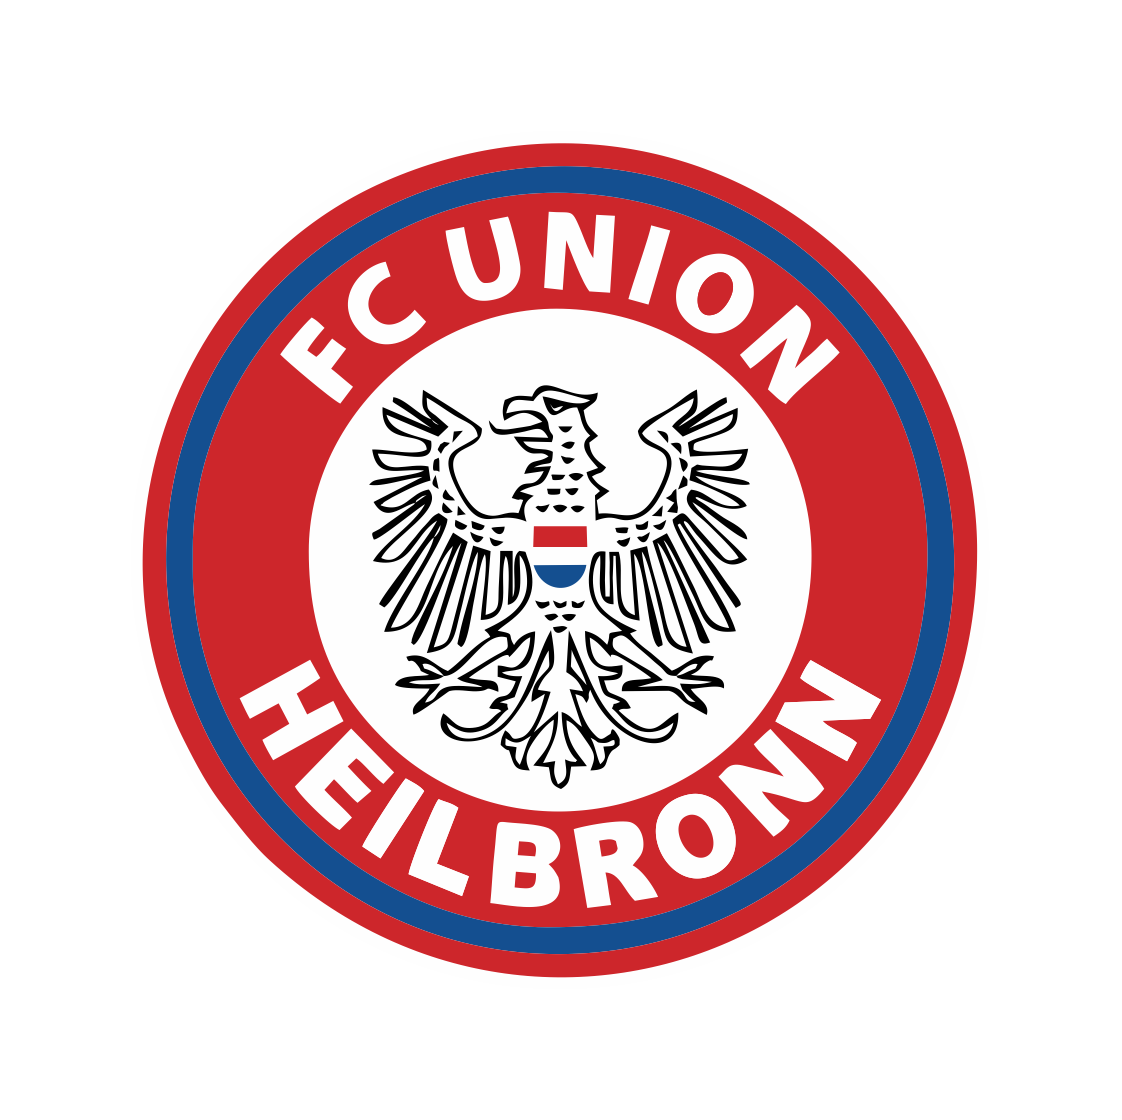 FC Union Heilbronn e.V.